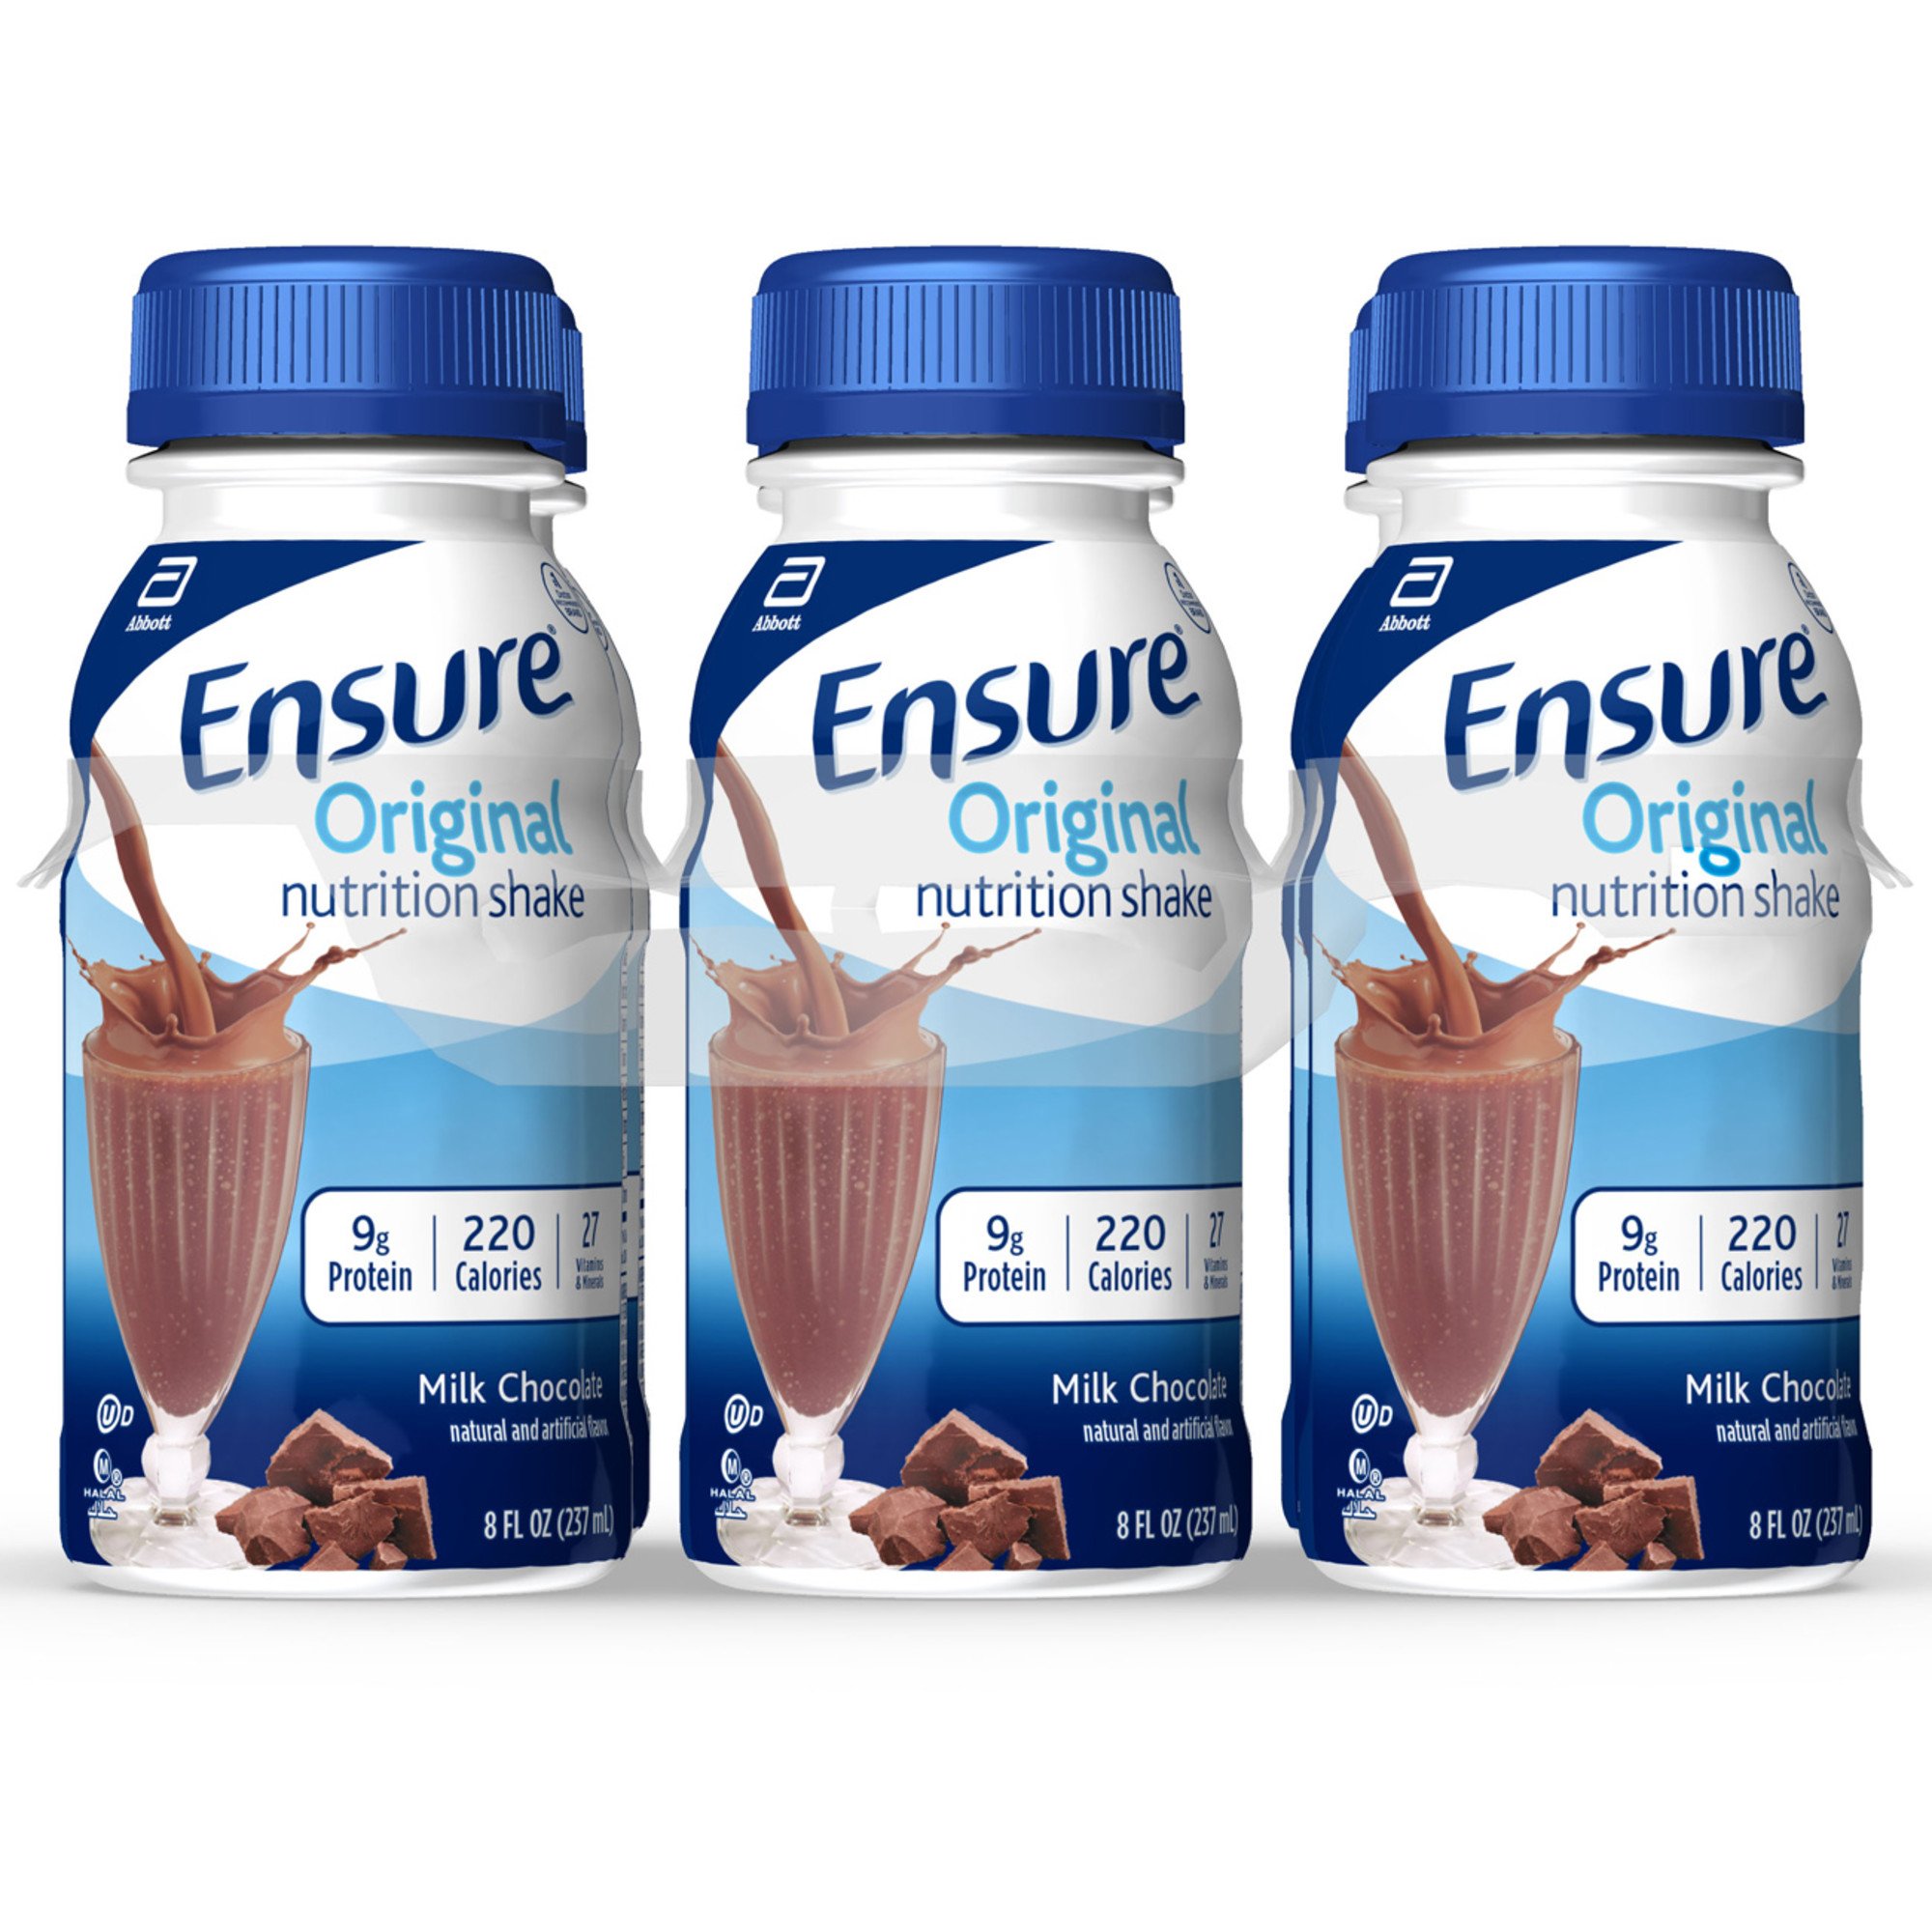 Ensure Original Nutrition Shake - Milk Chocolate